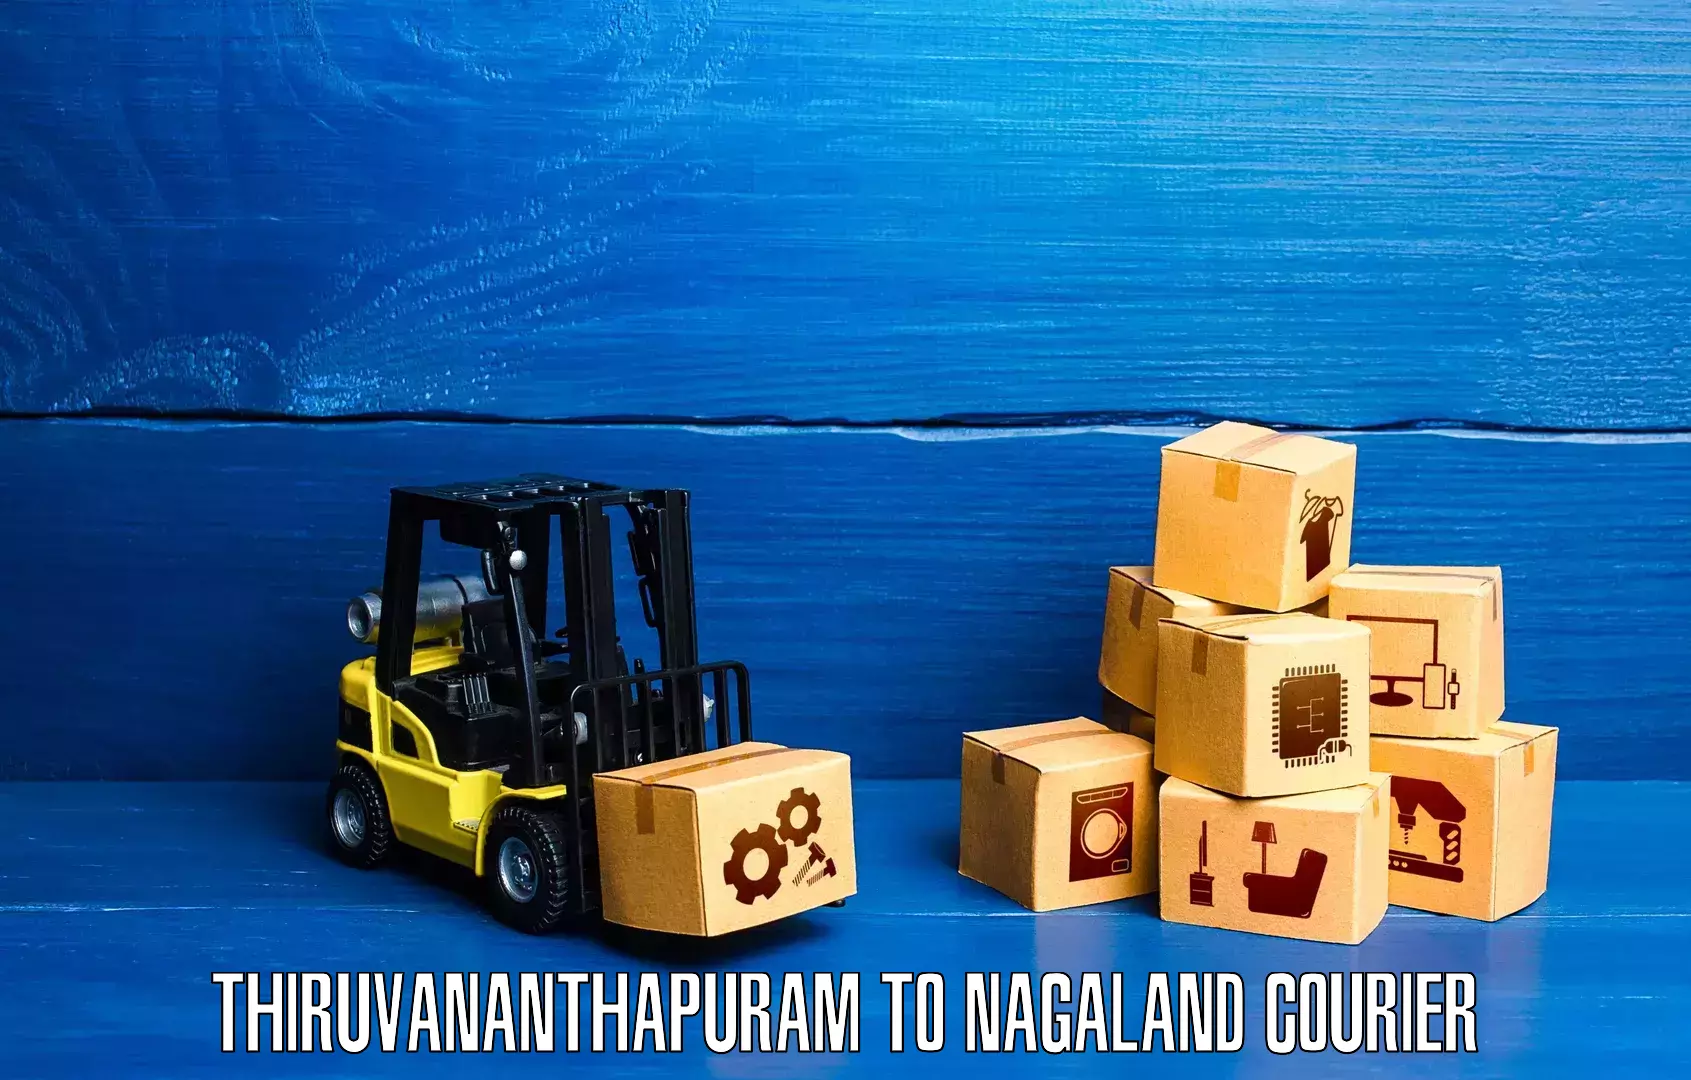 Global logistics network Thiruvananthapuram to Kohima